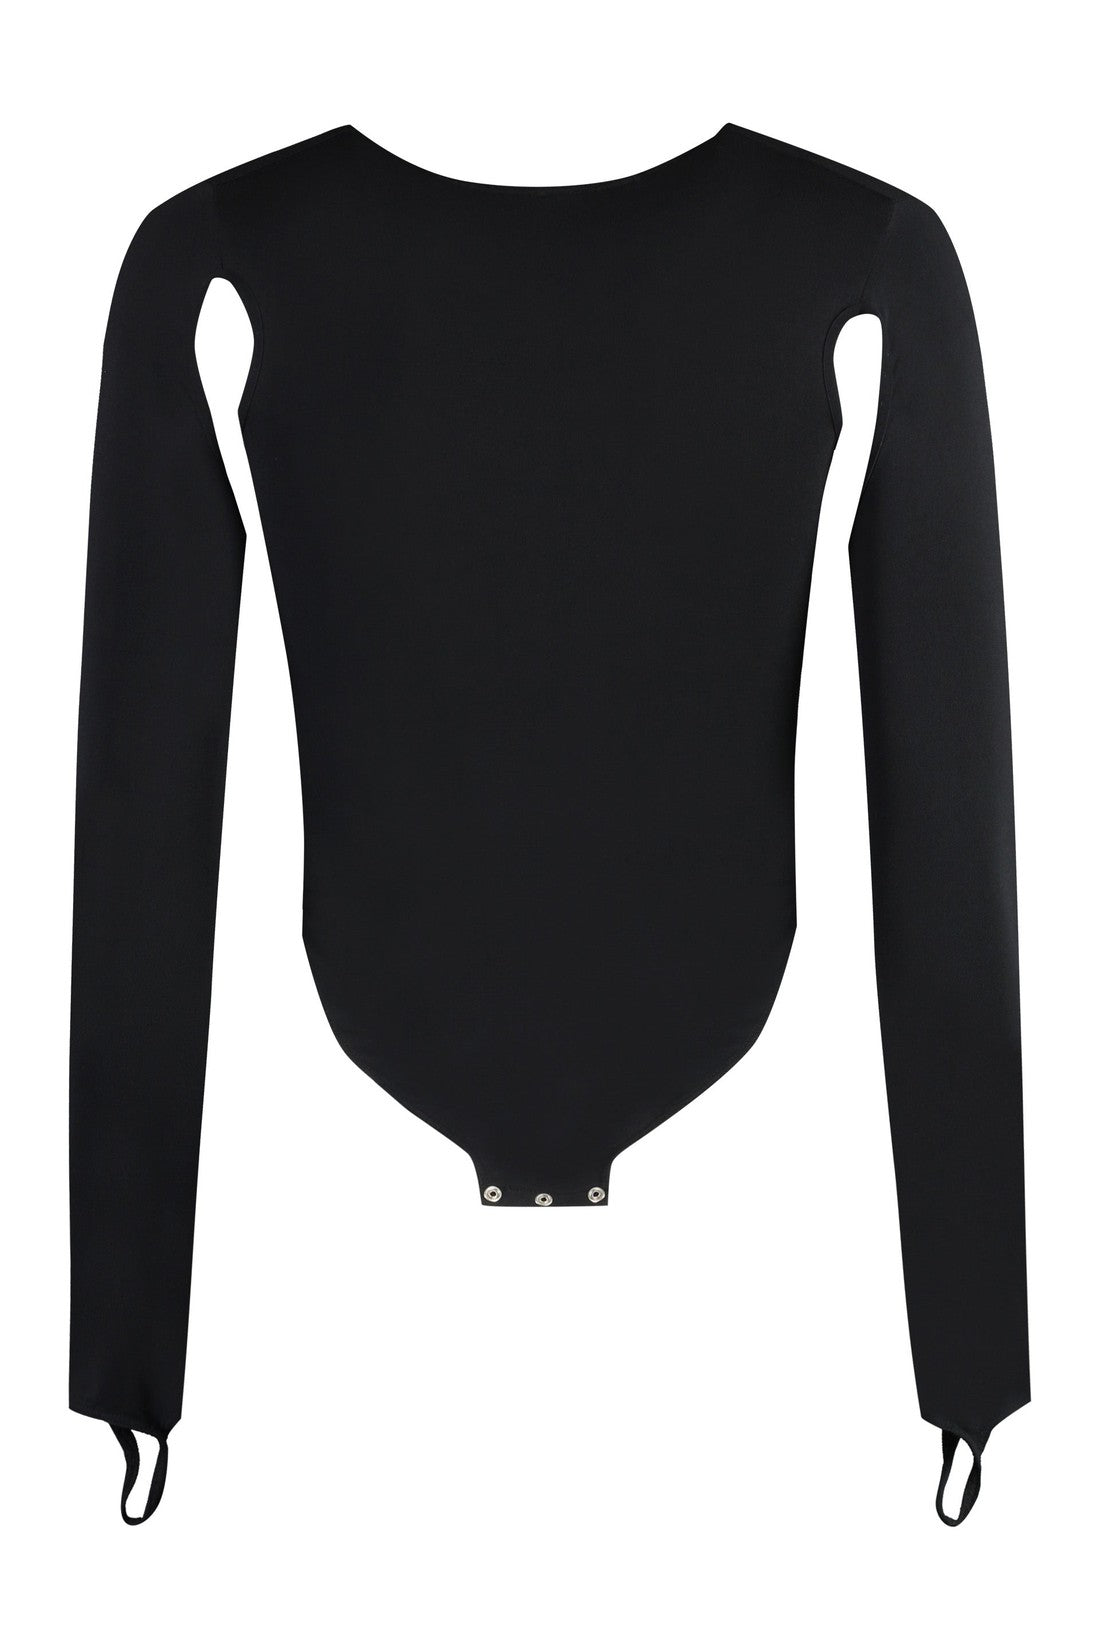 ANDREADAMO-OUTLET-SALE-Jersey bodysuit-ARCHIVIST